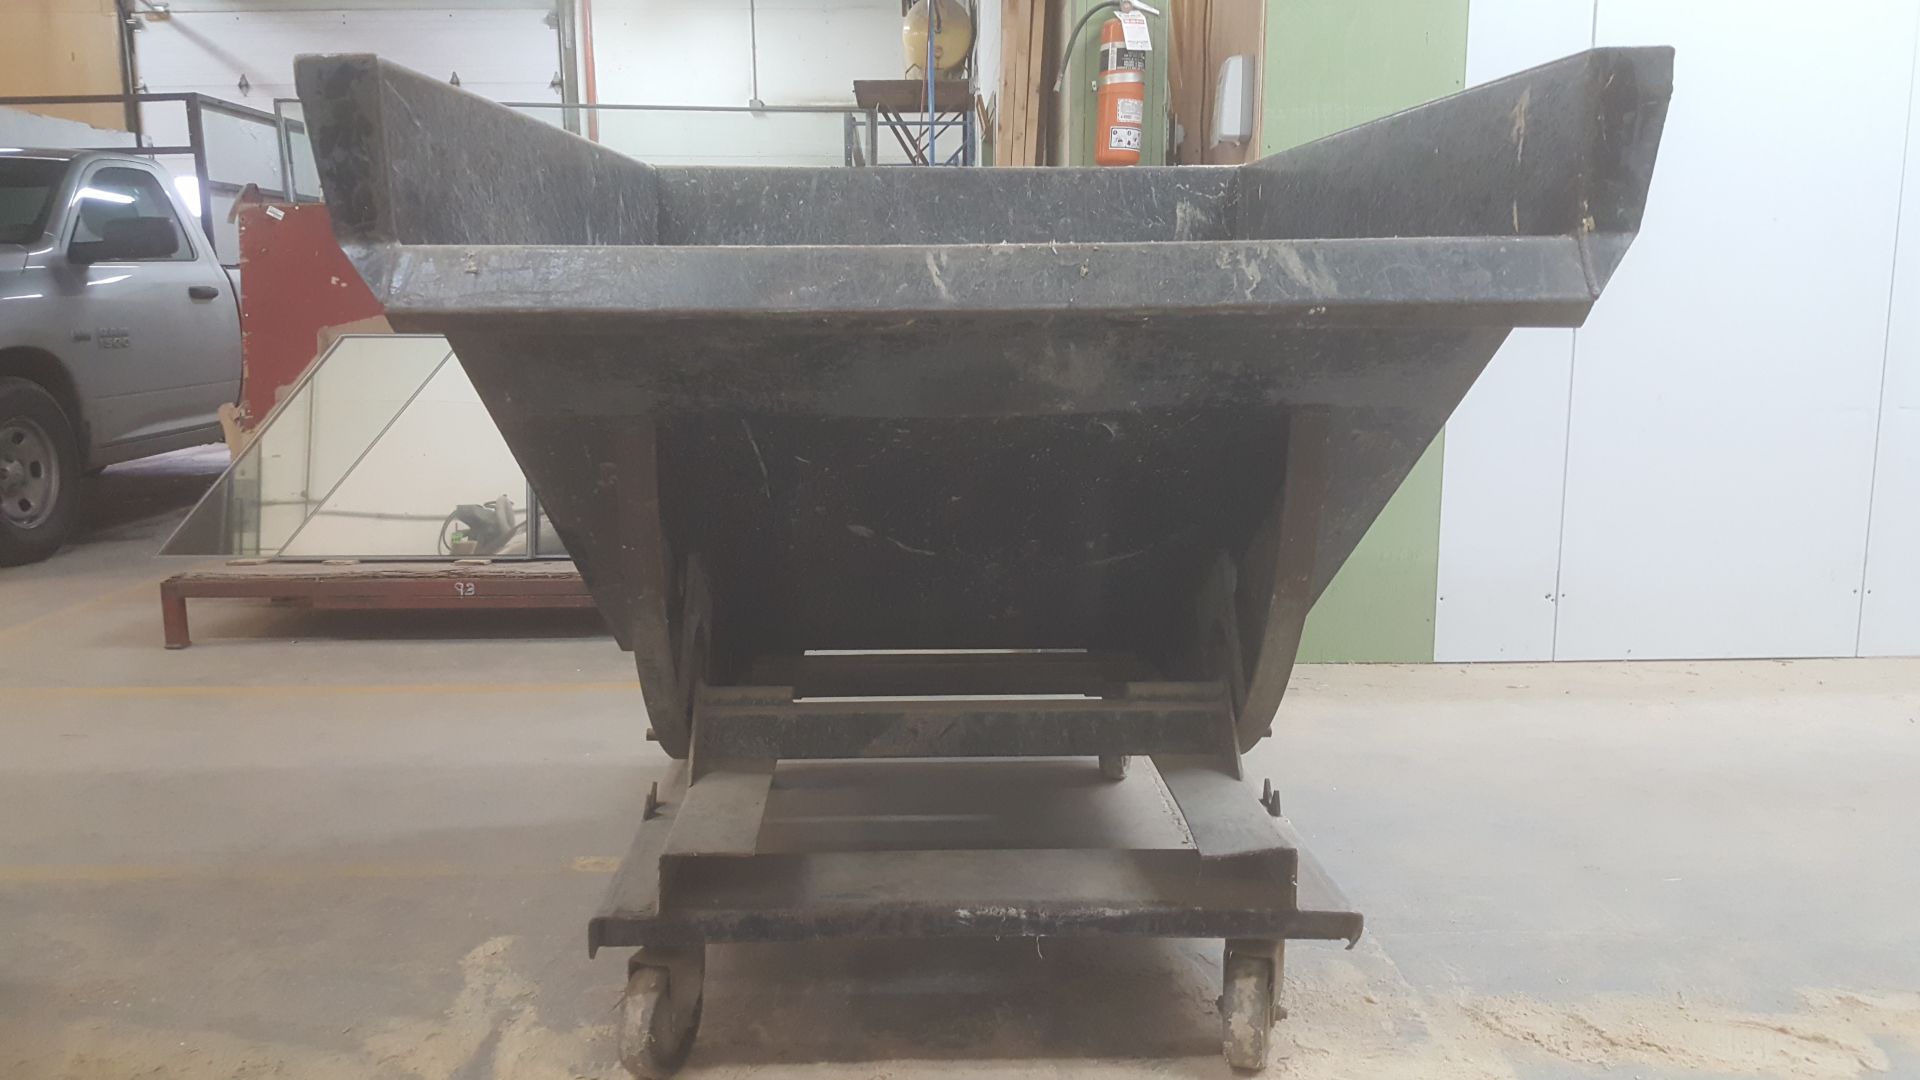 Steel Dumping bin on steel frame w/casters (54.5"x70"x52"H) - Image 4 of 4